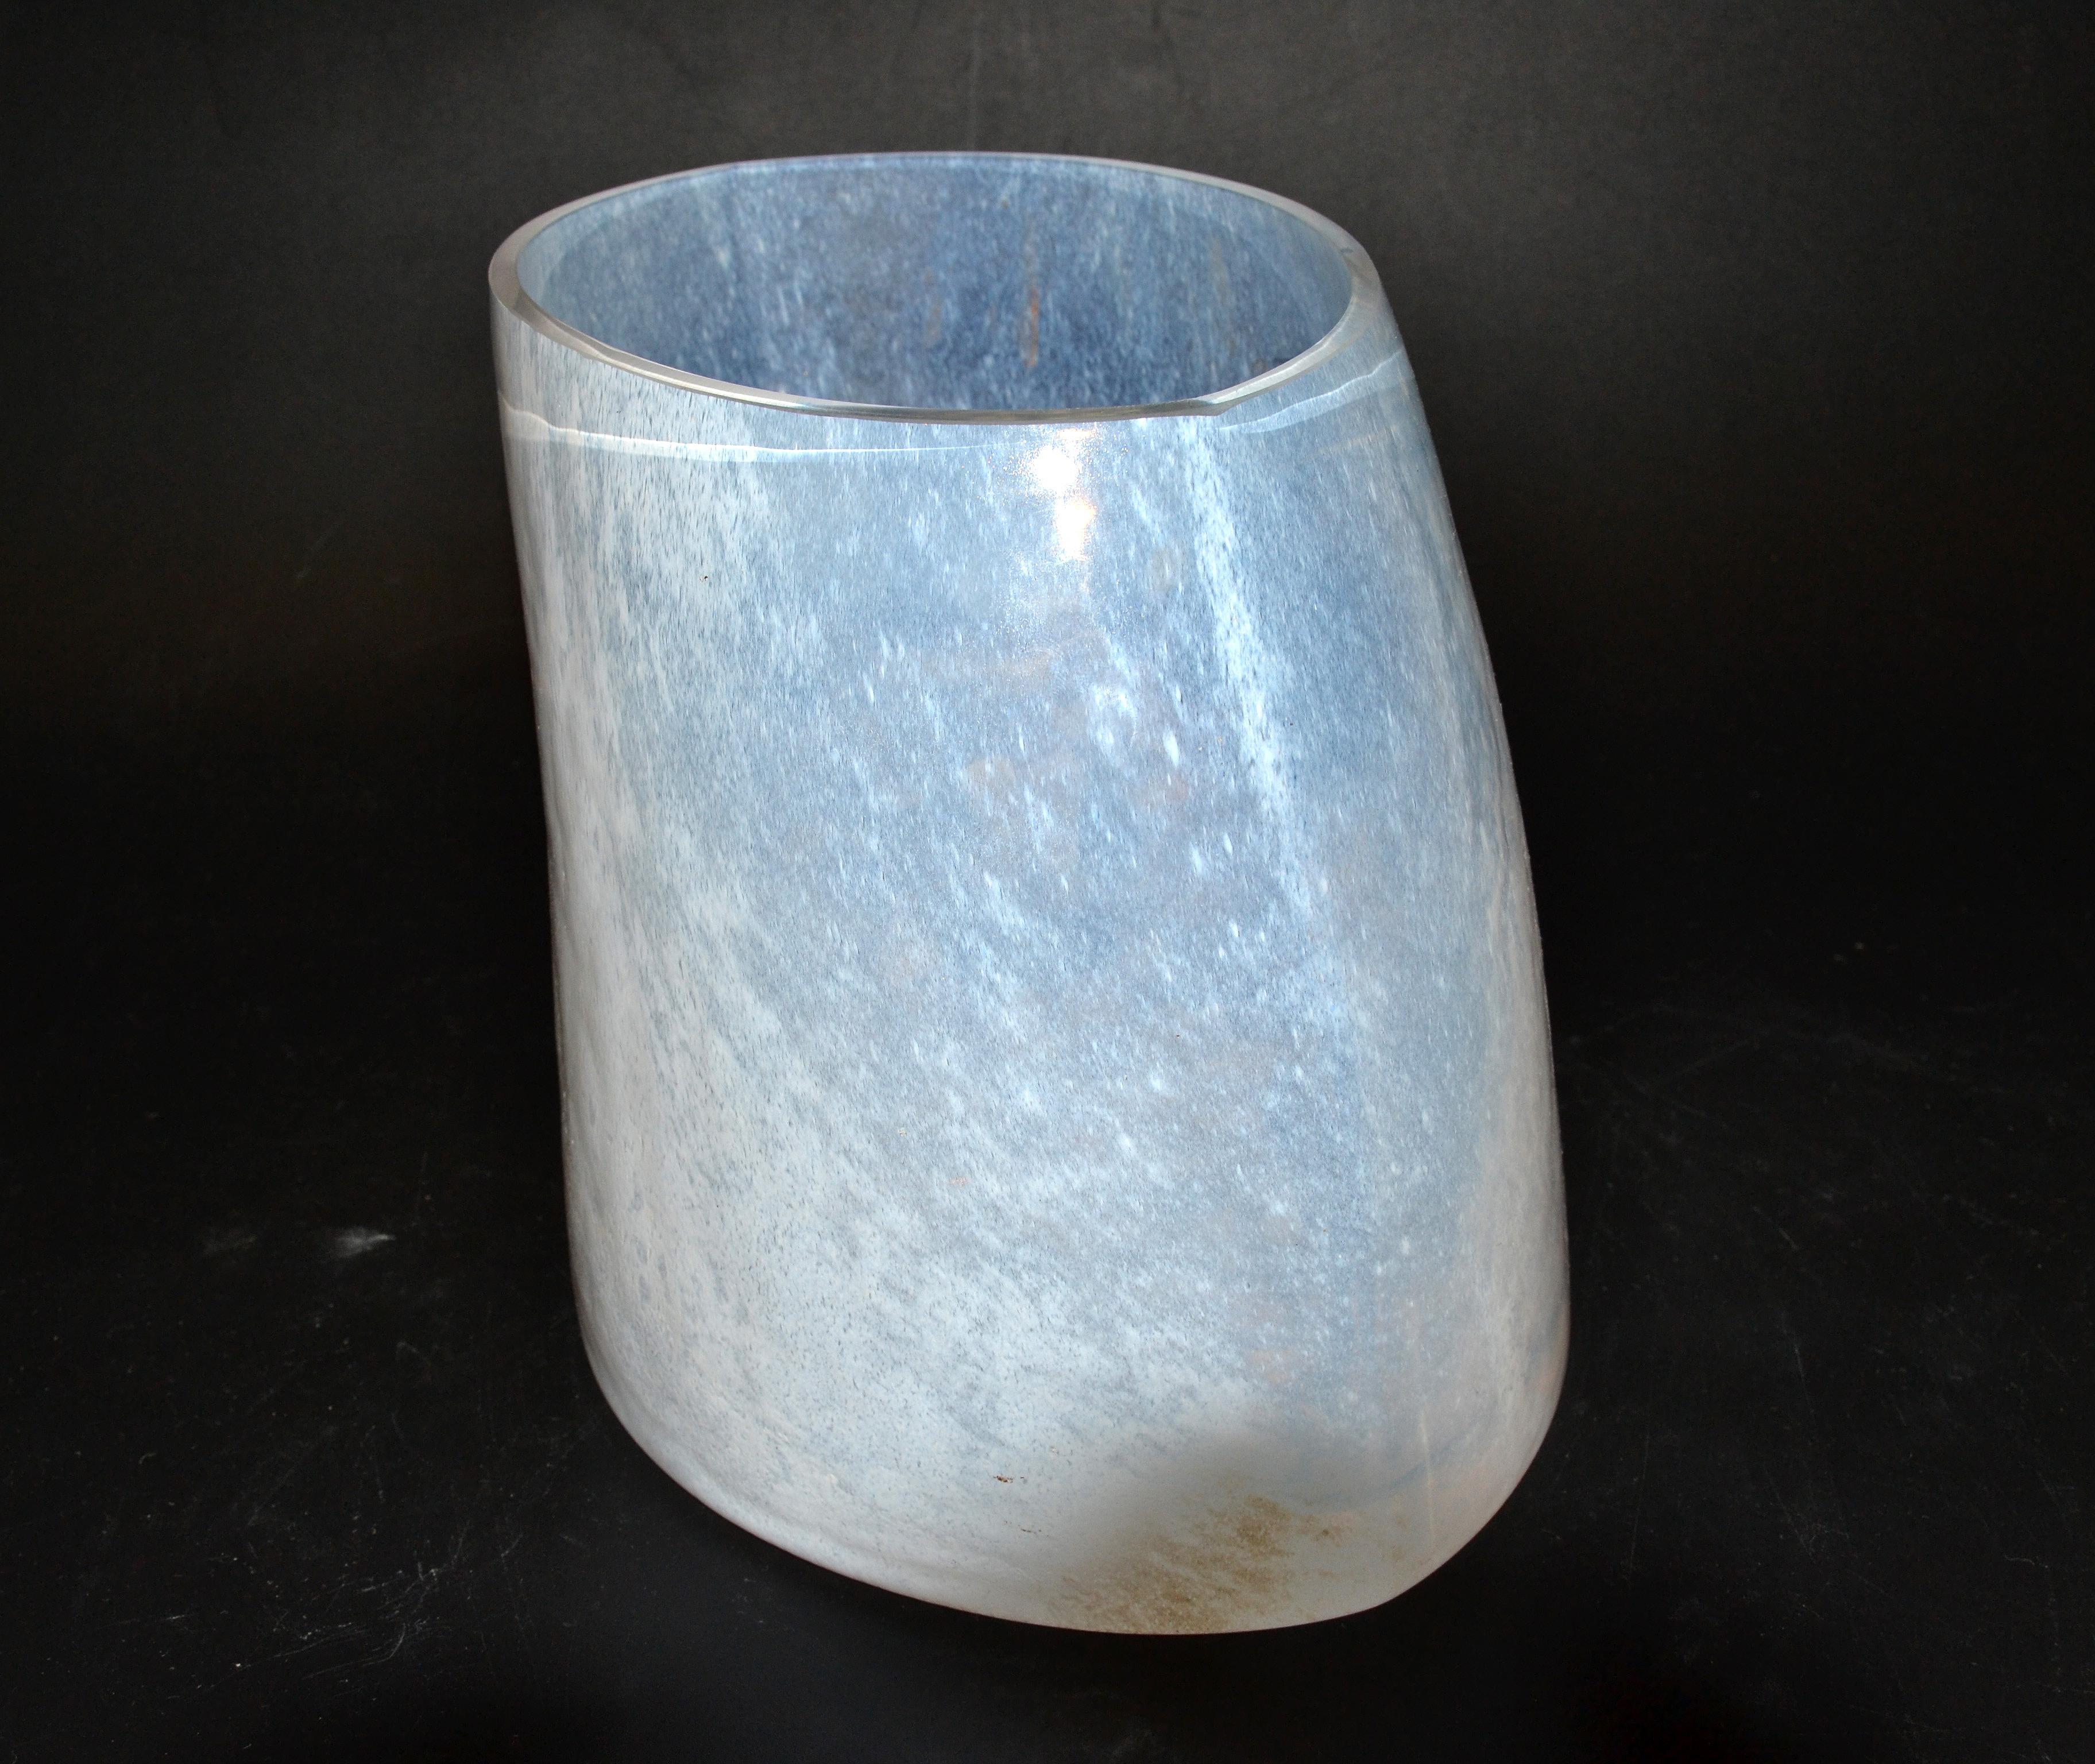 20th Century Kjell Engman Kosta Boda Catwalk Frosted Glass Vase Sweden Scandinavian Modern For Sale